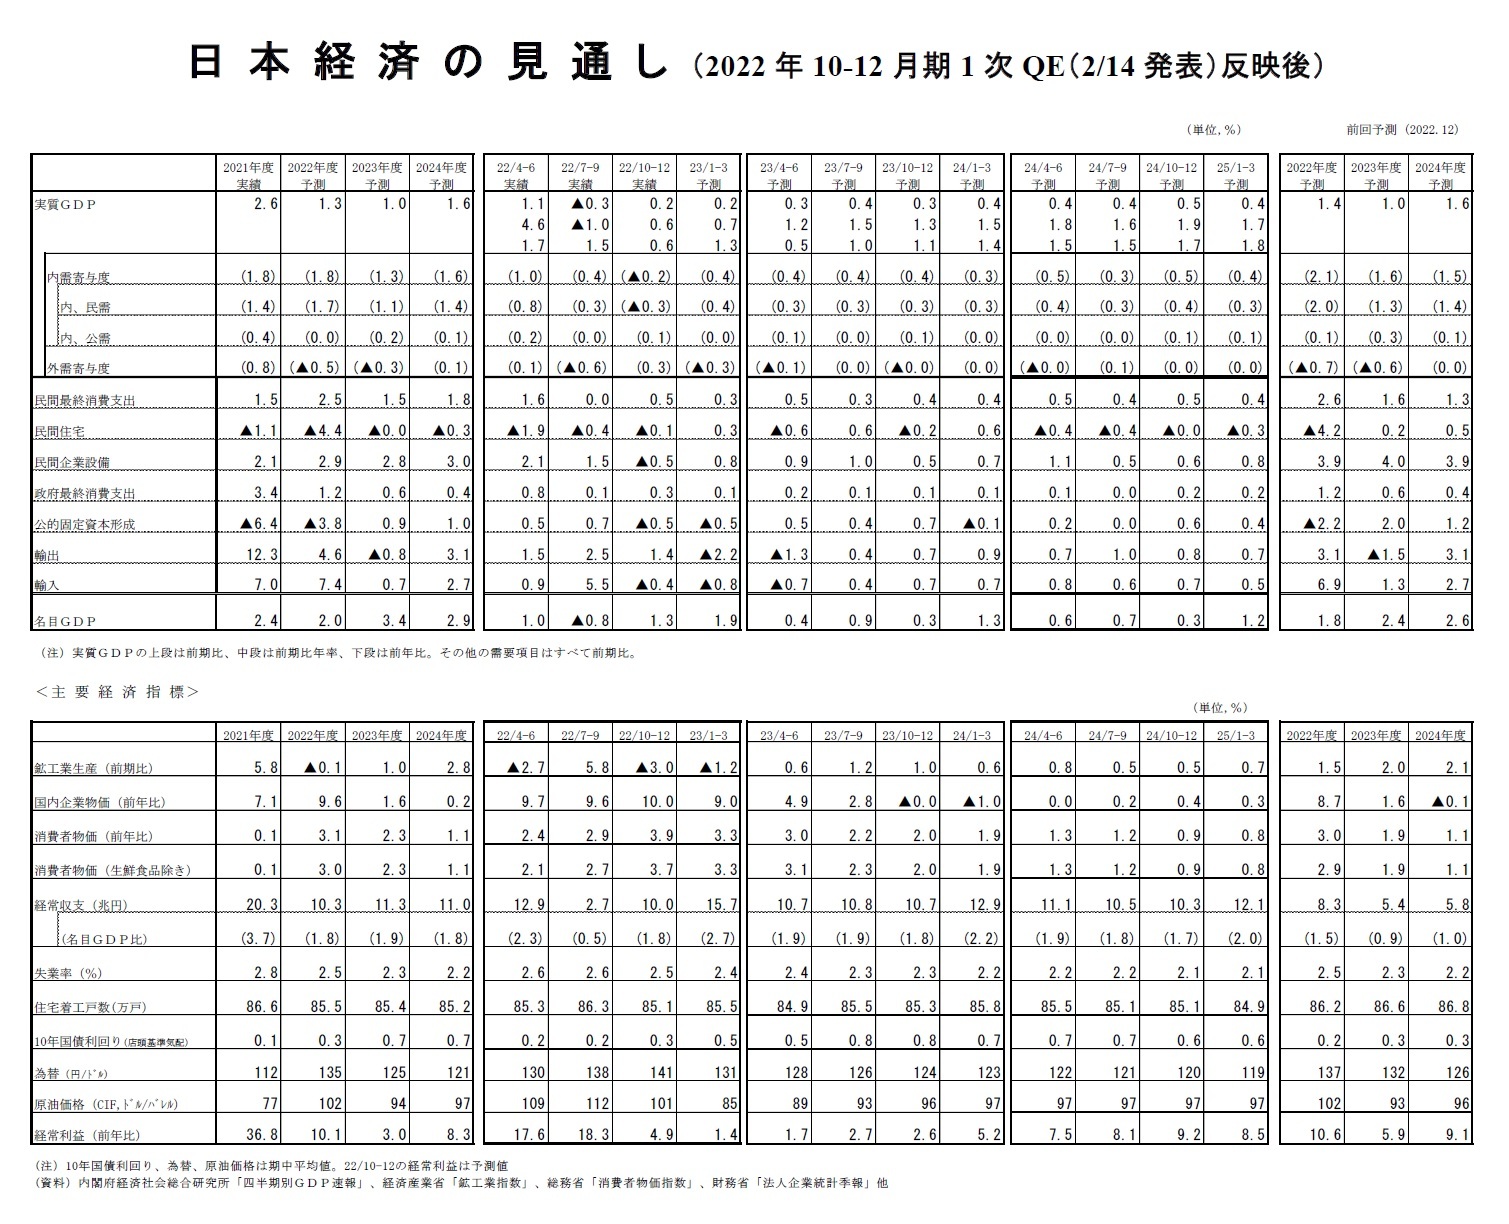 日本経済の見通し（2022年10-12月期1次QE（2/14発表）反映後）